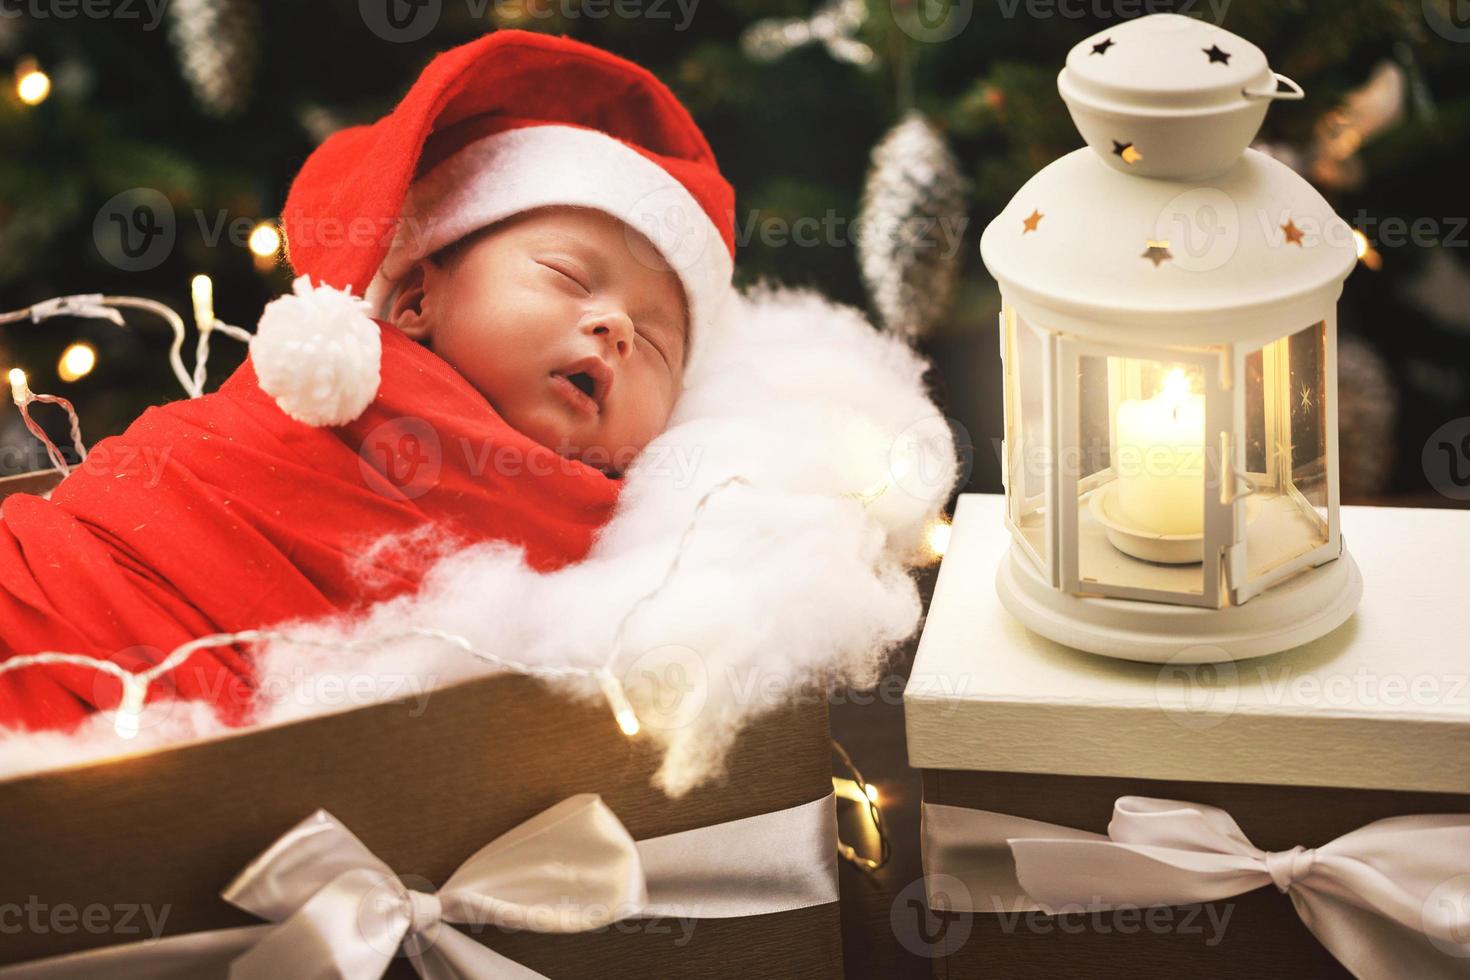 söt nyfödd bebis bär santa claus hatt är sovande i de jul gåva låda foto